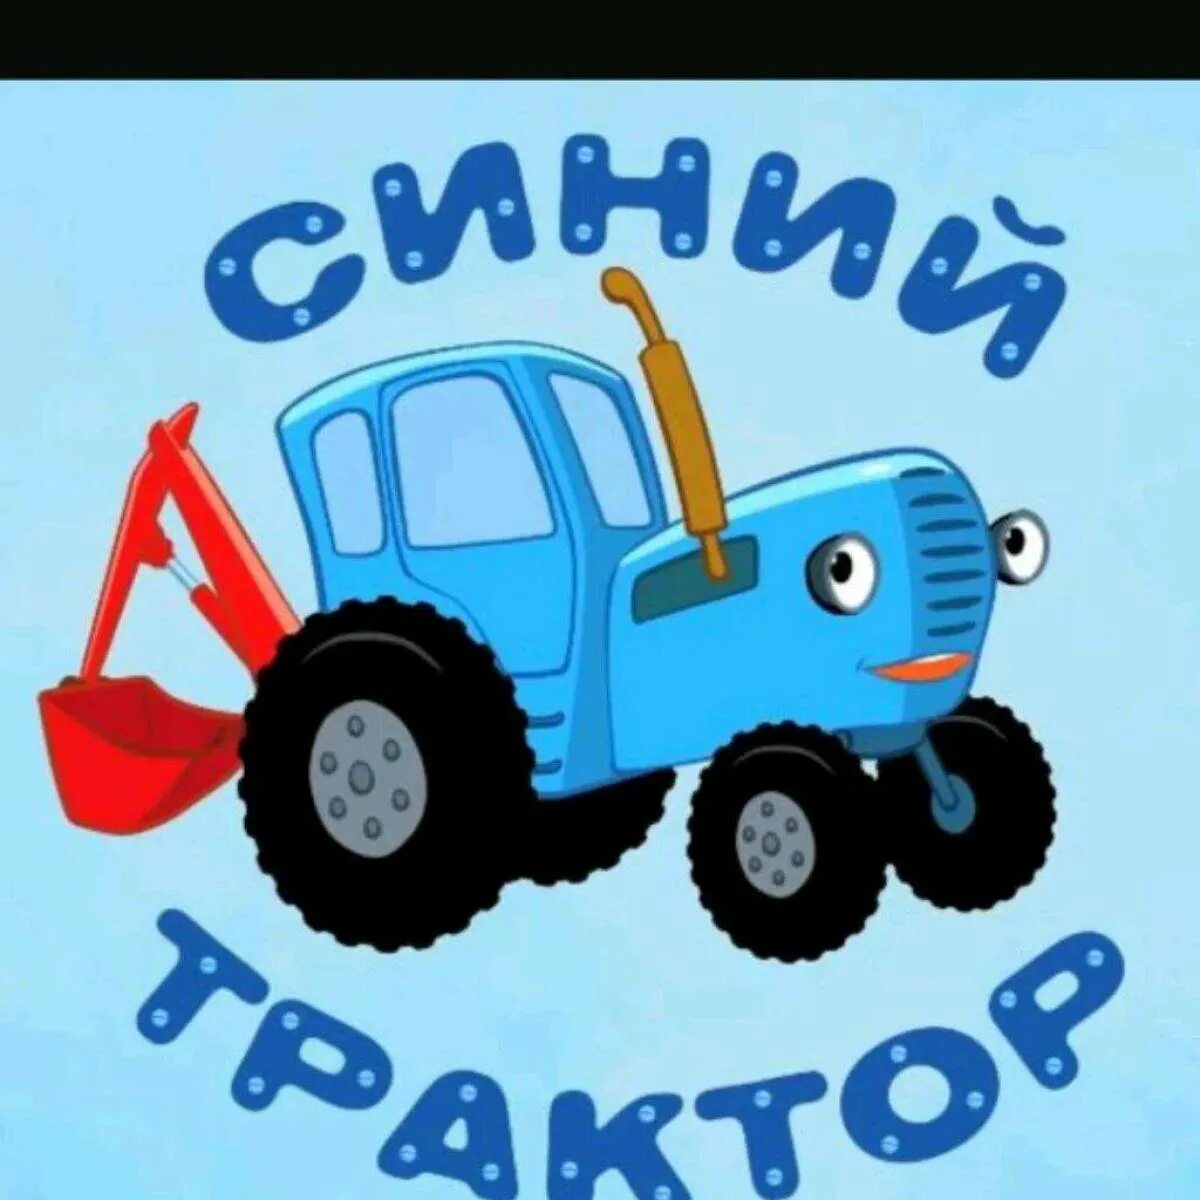 Синий трактор трактор Гоша. Сини1 синий трактор. Габор синий трактор. Синий трактор для малышей ТРАКТОРЕНОК. Синий трактор на мотив